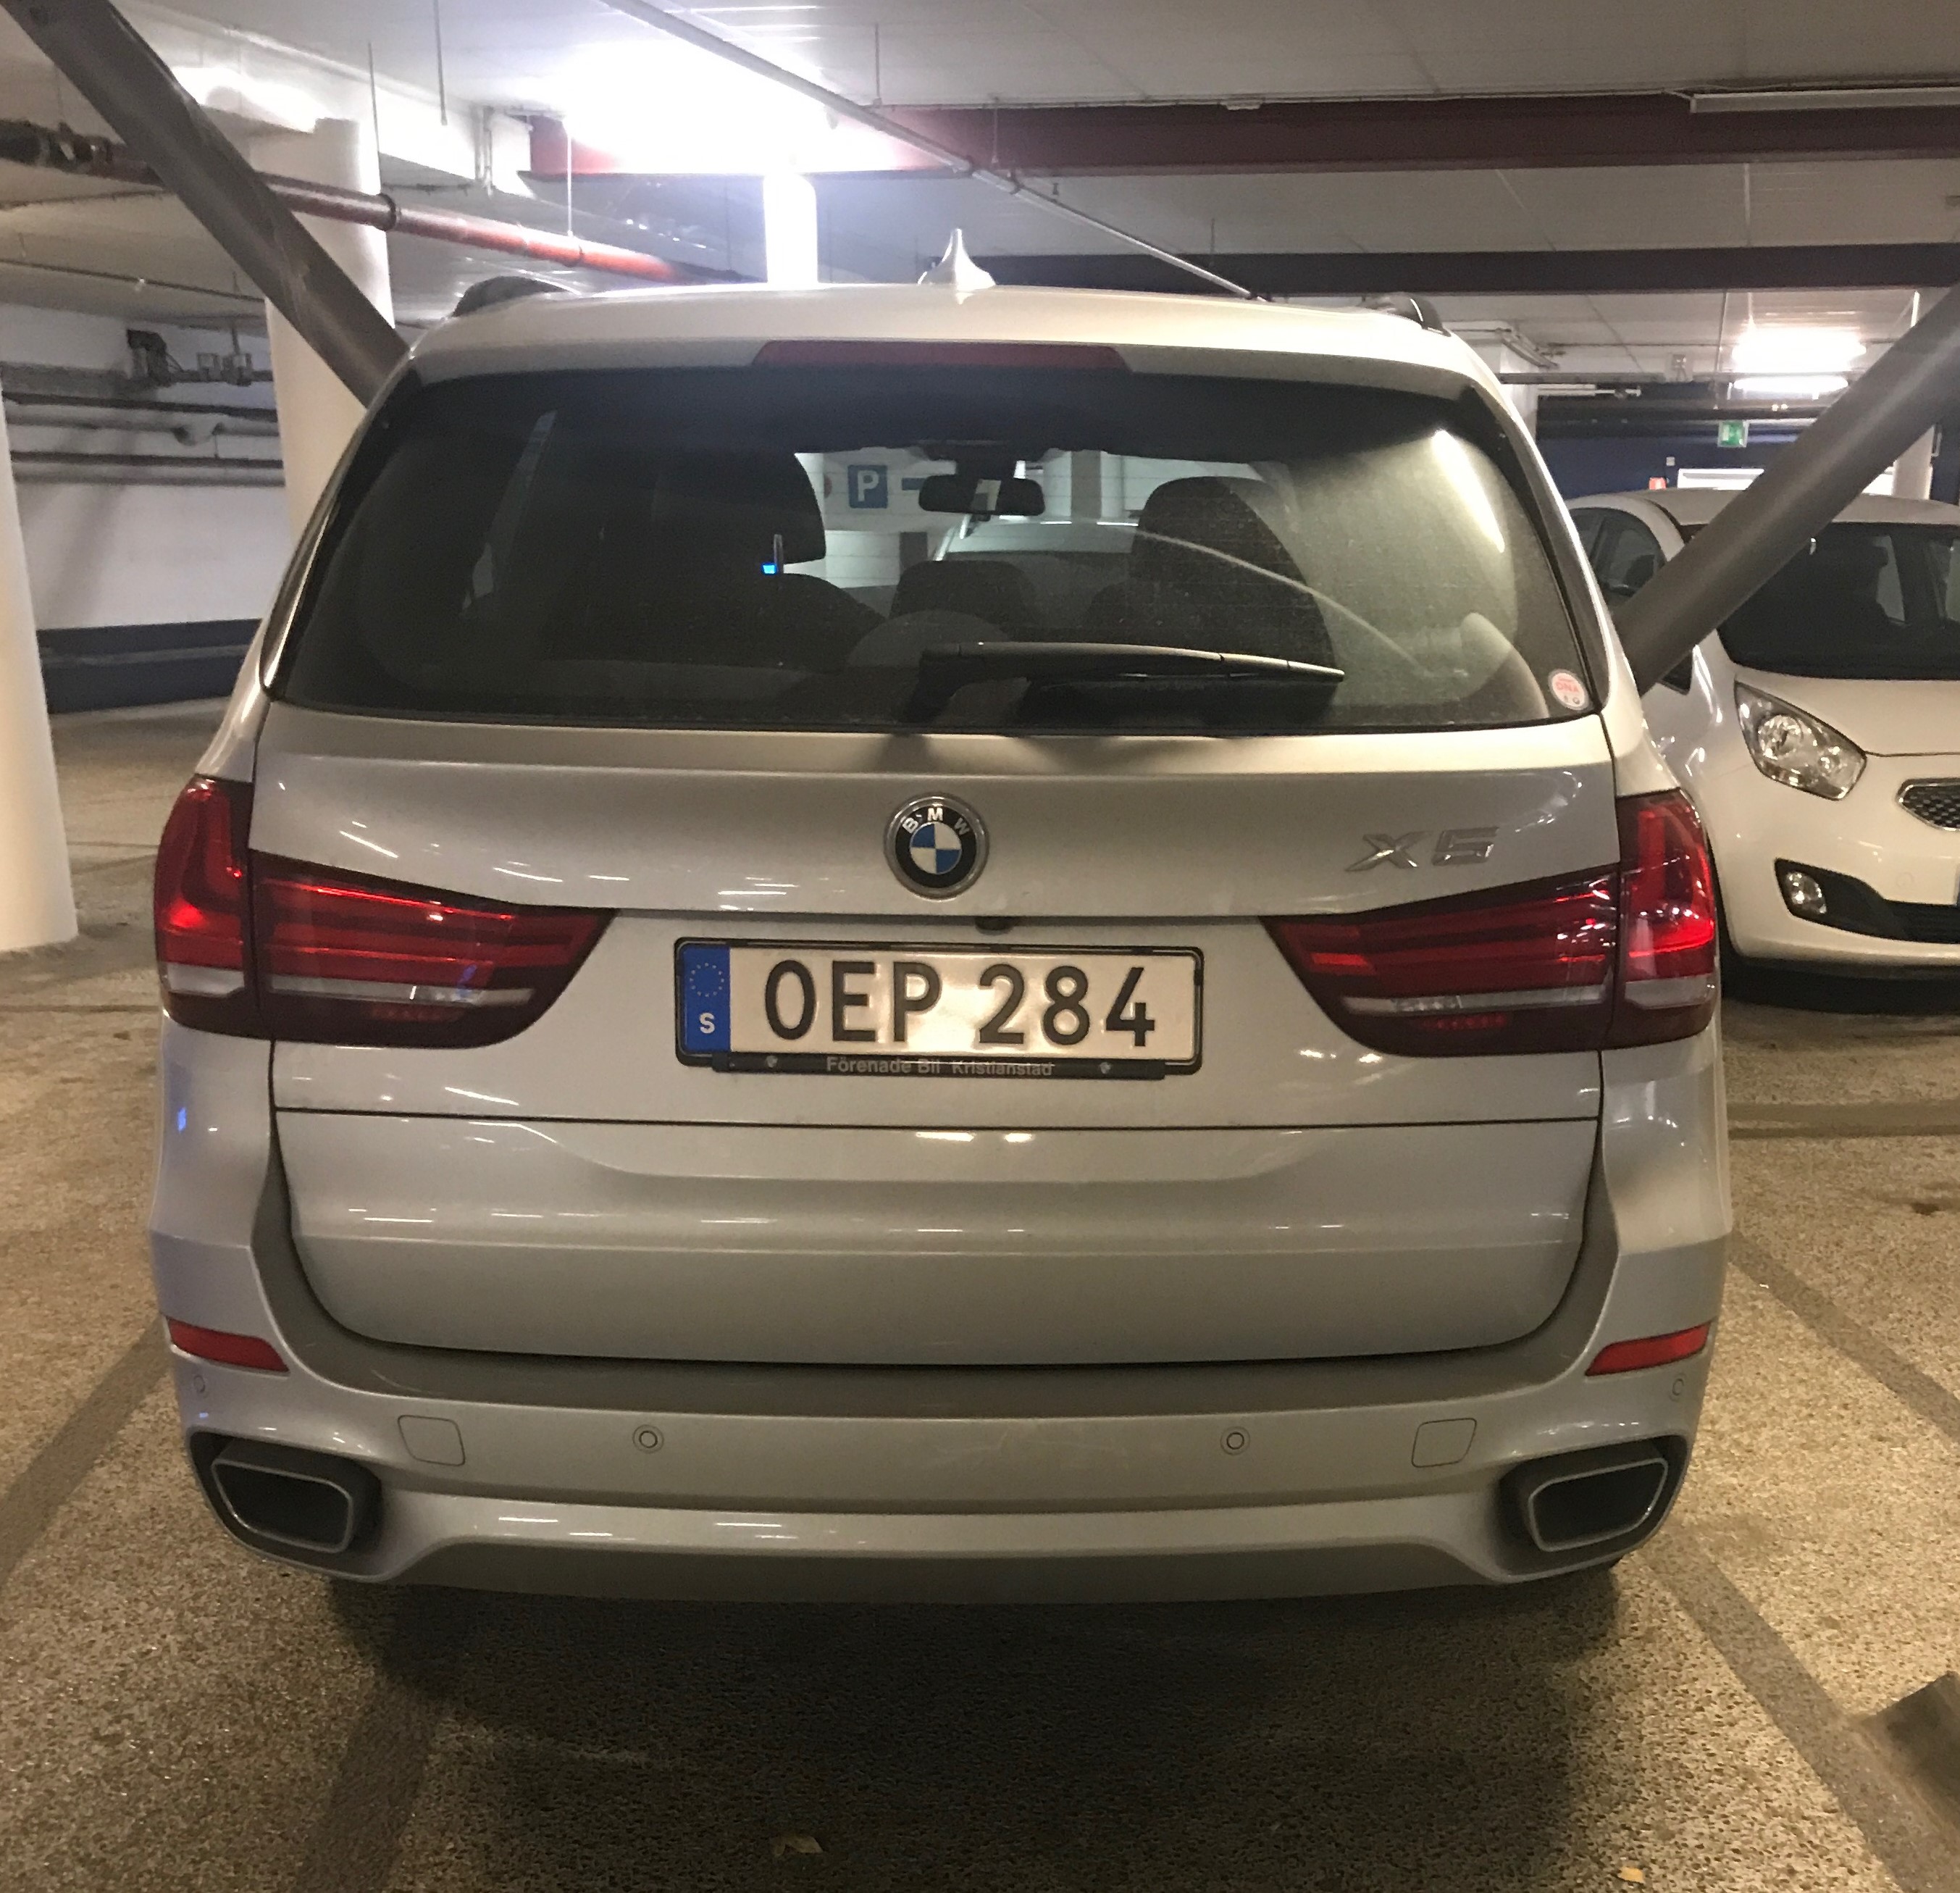 BMW X5 stulen i Löddeköpinge, Skåne